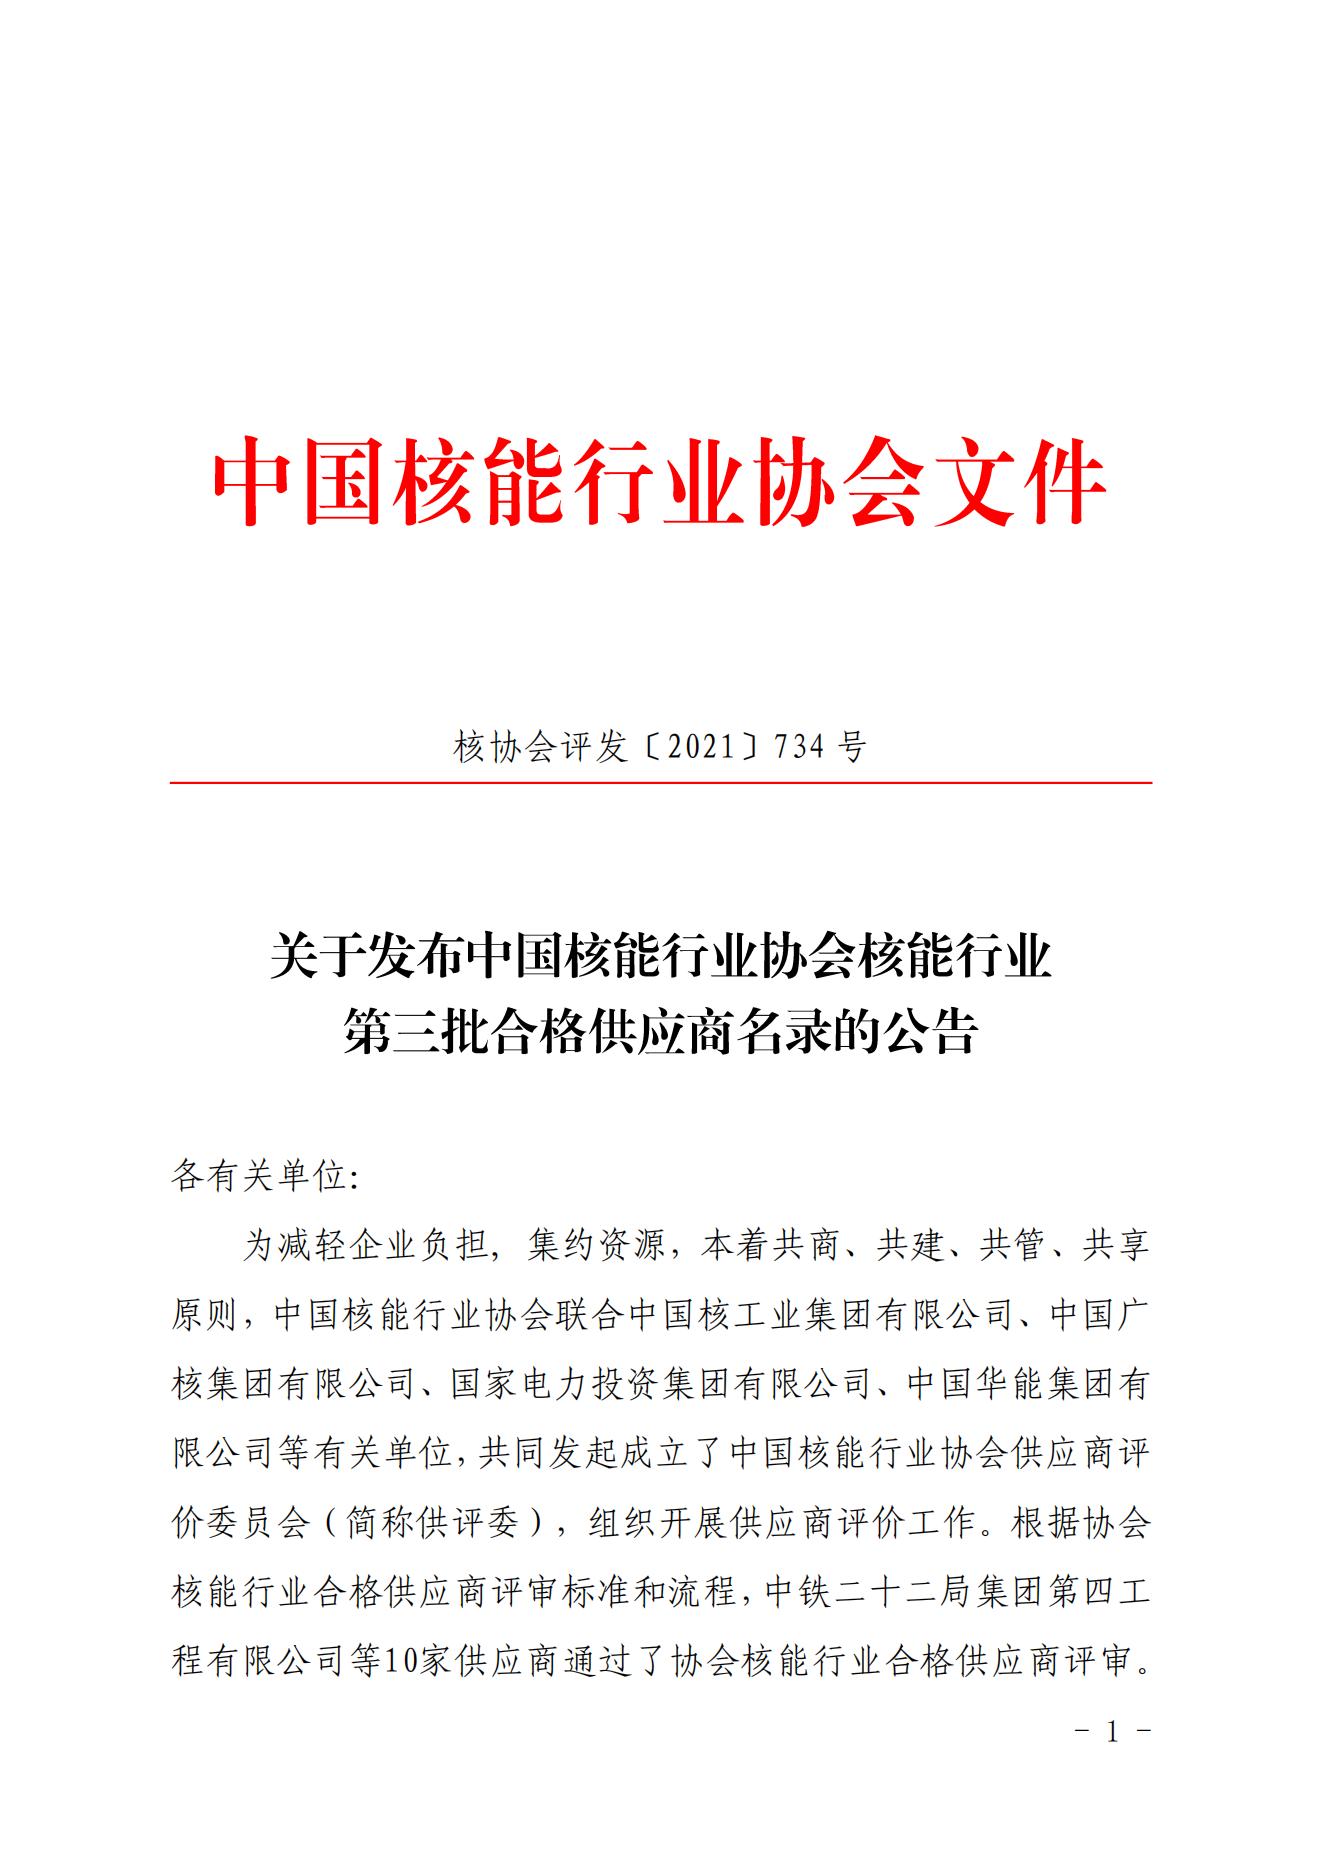 关于发布中国核能行业协会核能行业第三批合格供应商名录的公告_00.jpg